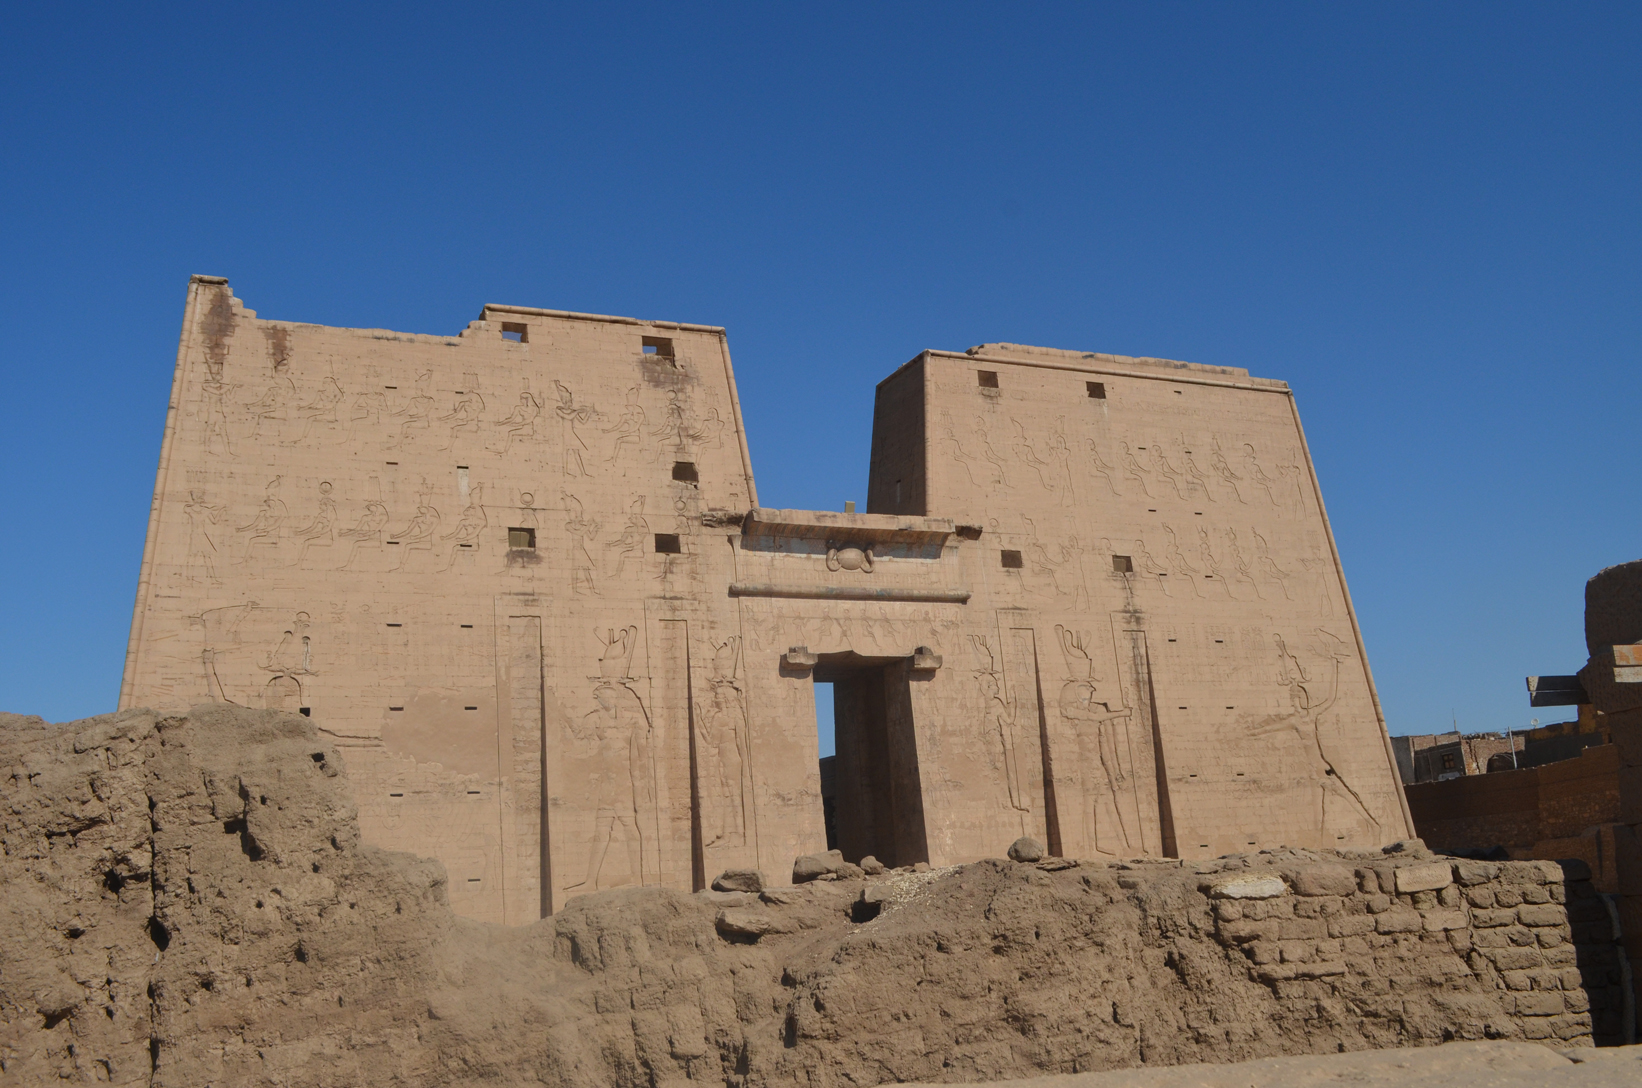 
Templo de Edfu